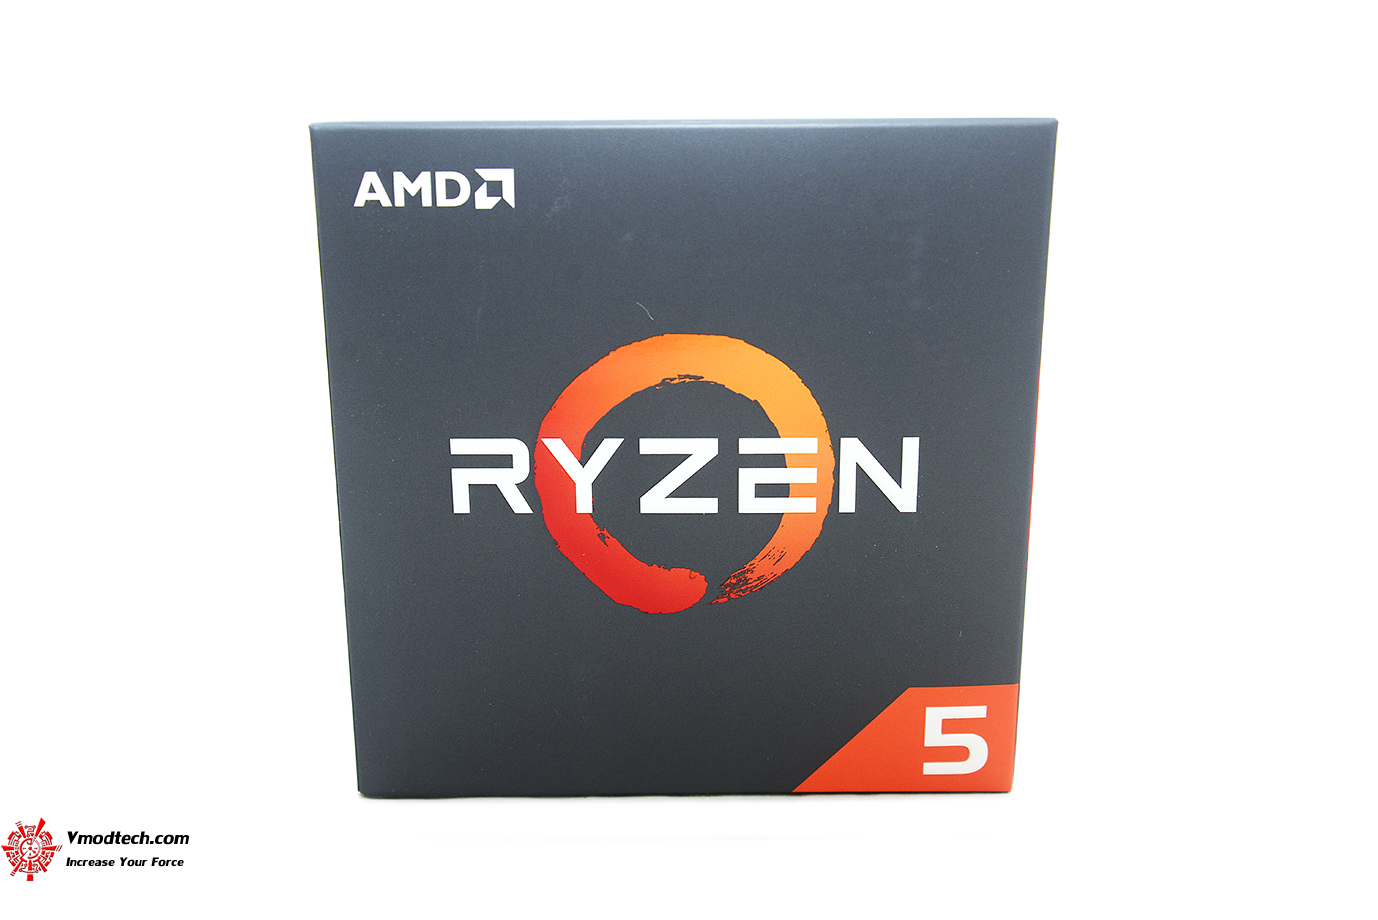 dsc 2364 AMD RYZEN 5 2600 PROCESSOR REVIEW